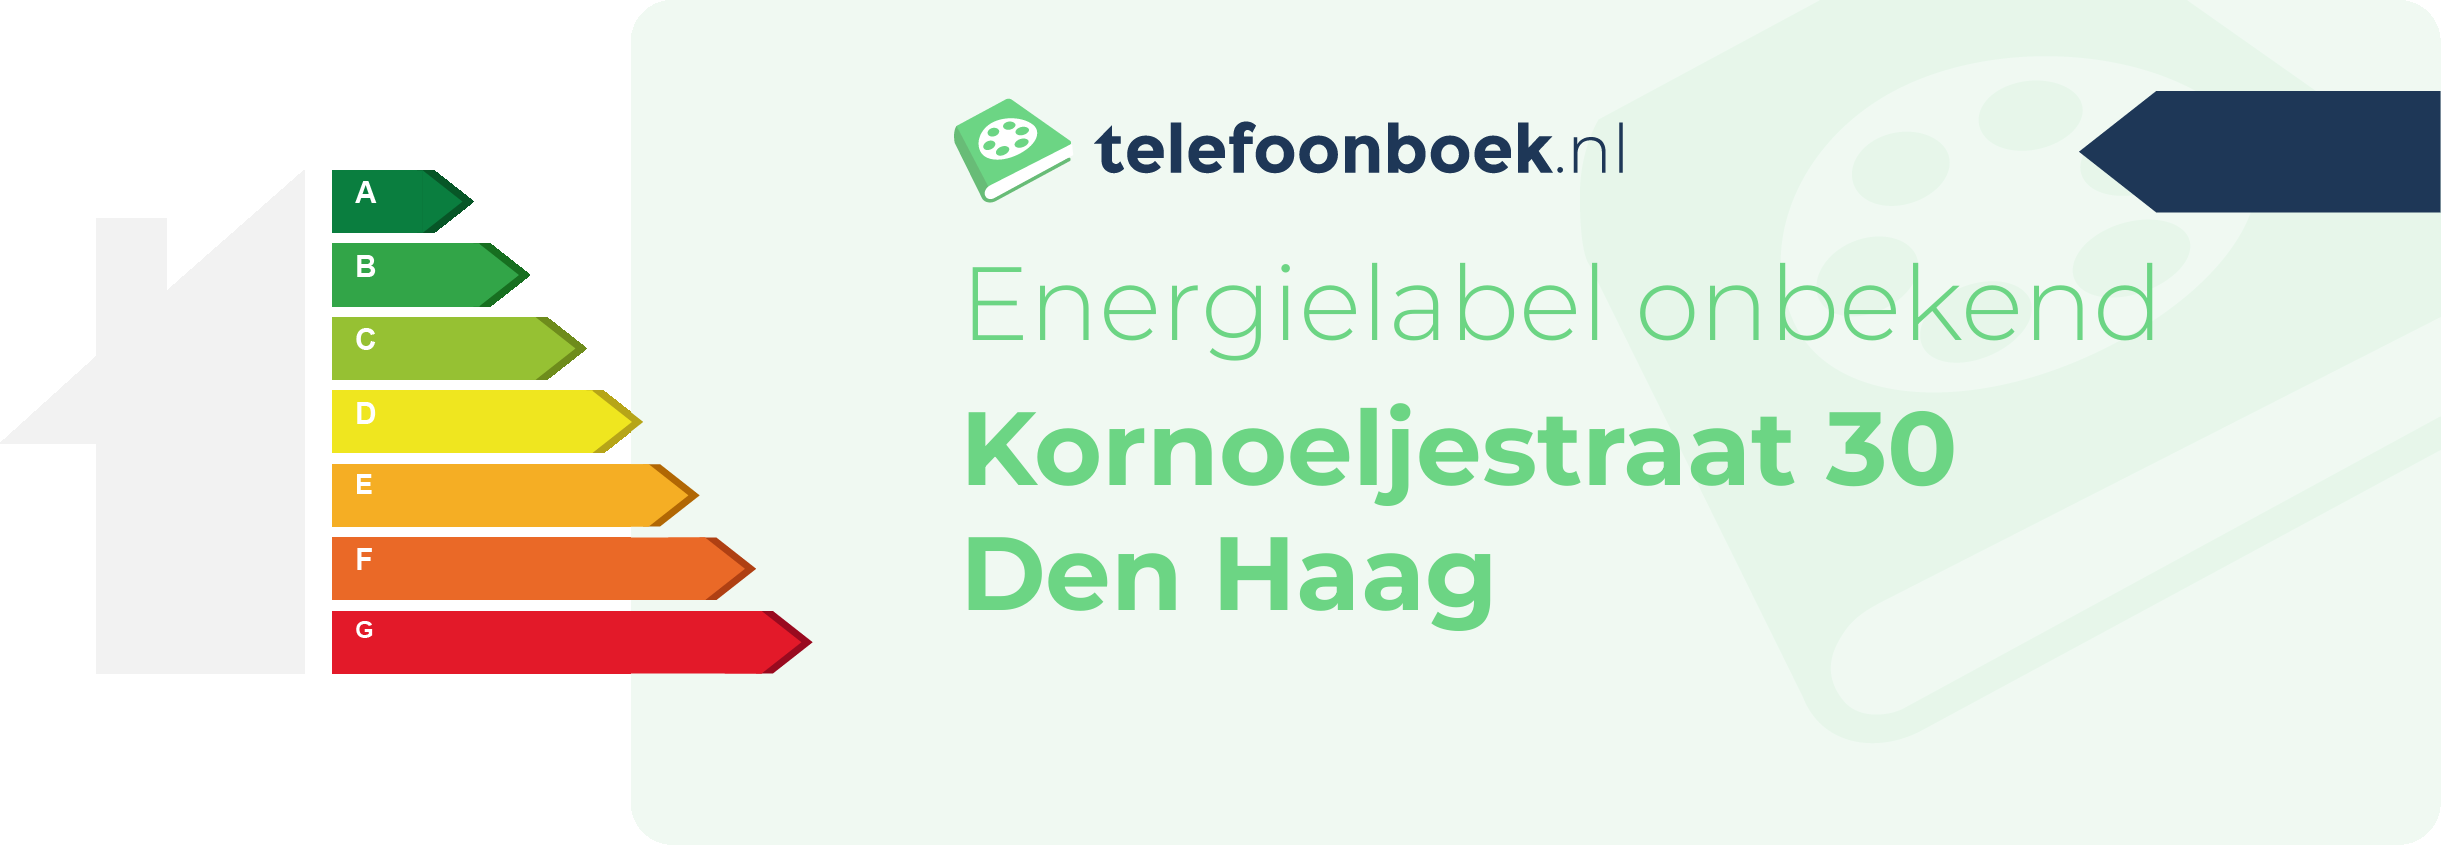 Energielabel Kornoeljestraat 30 Den Haag